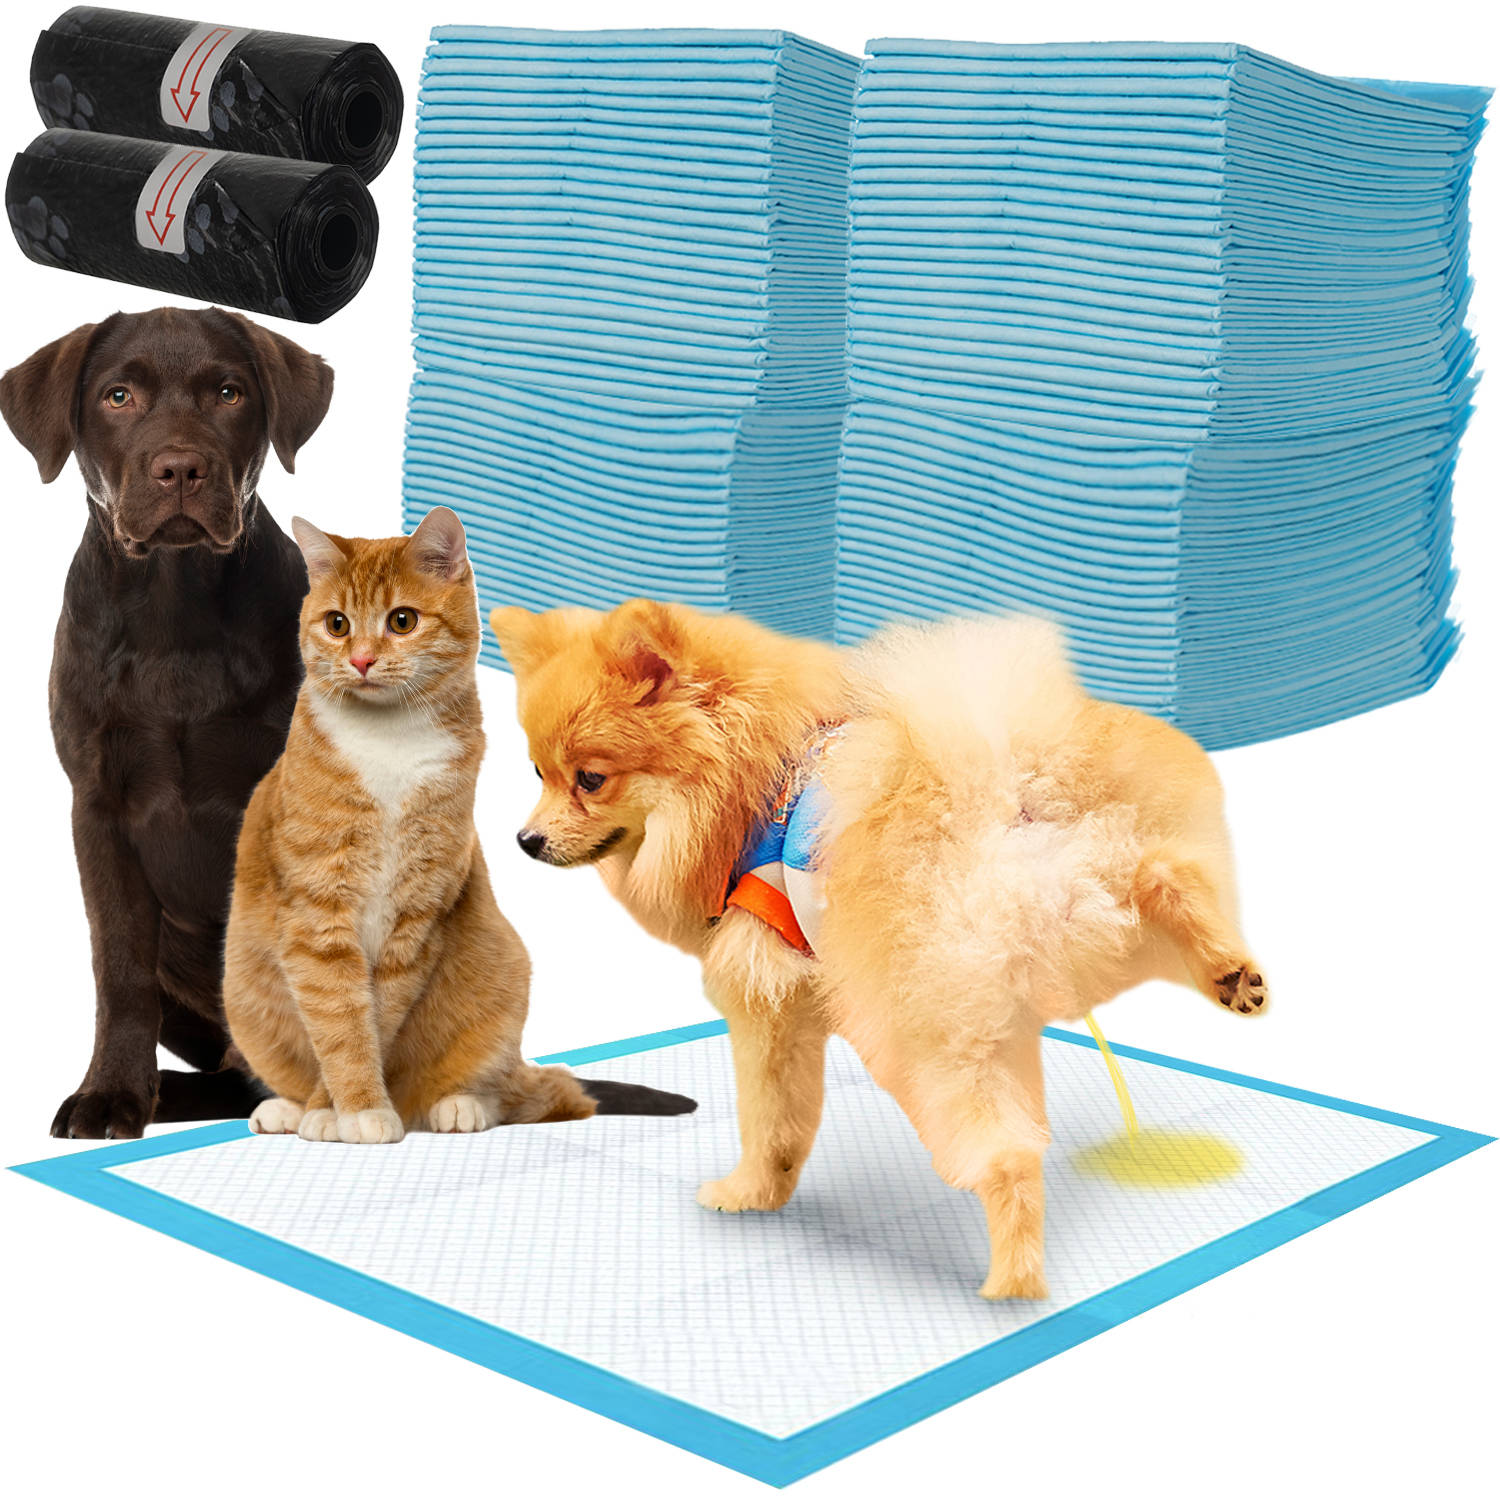 100 darabos 4 rétegű kutyapelenka csomag 2 tekercs kutyapiszok zacskóval – 33 x 45 cm (BB-17213) (11)